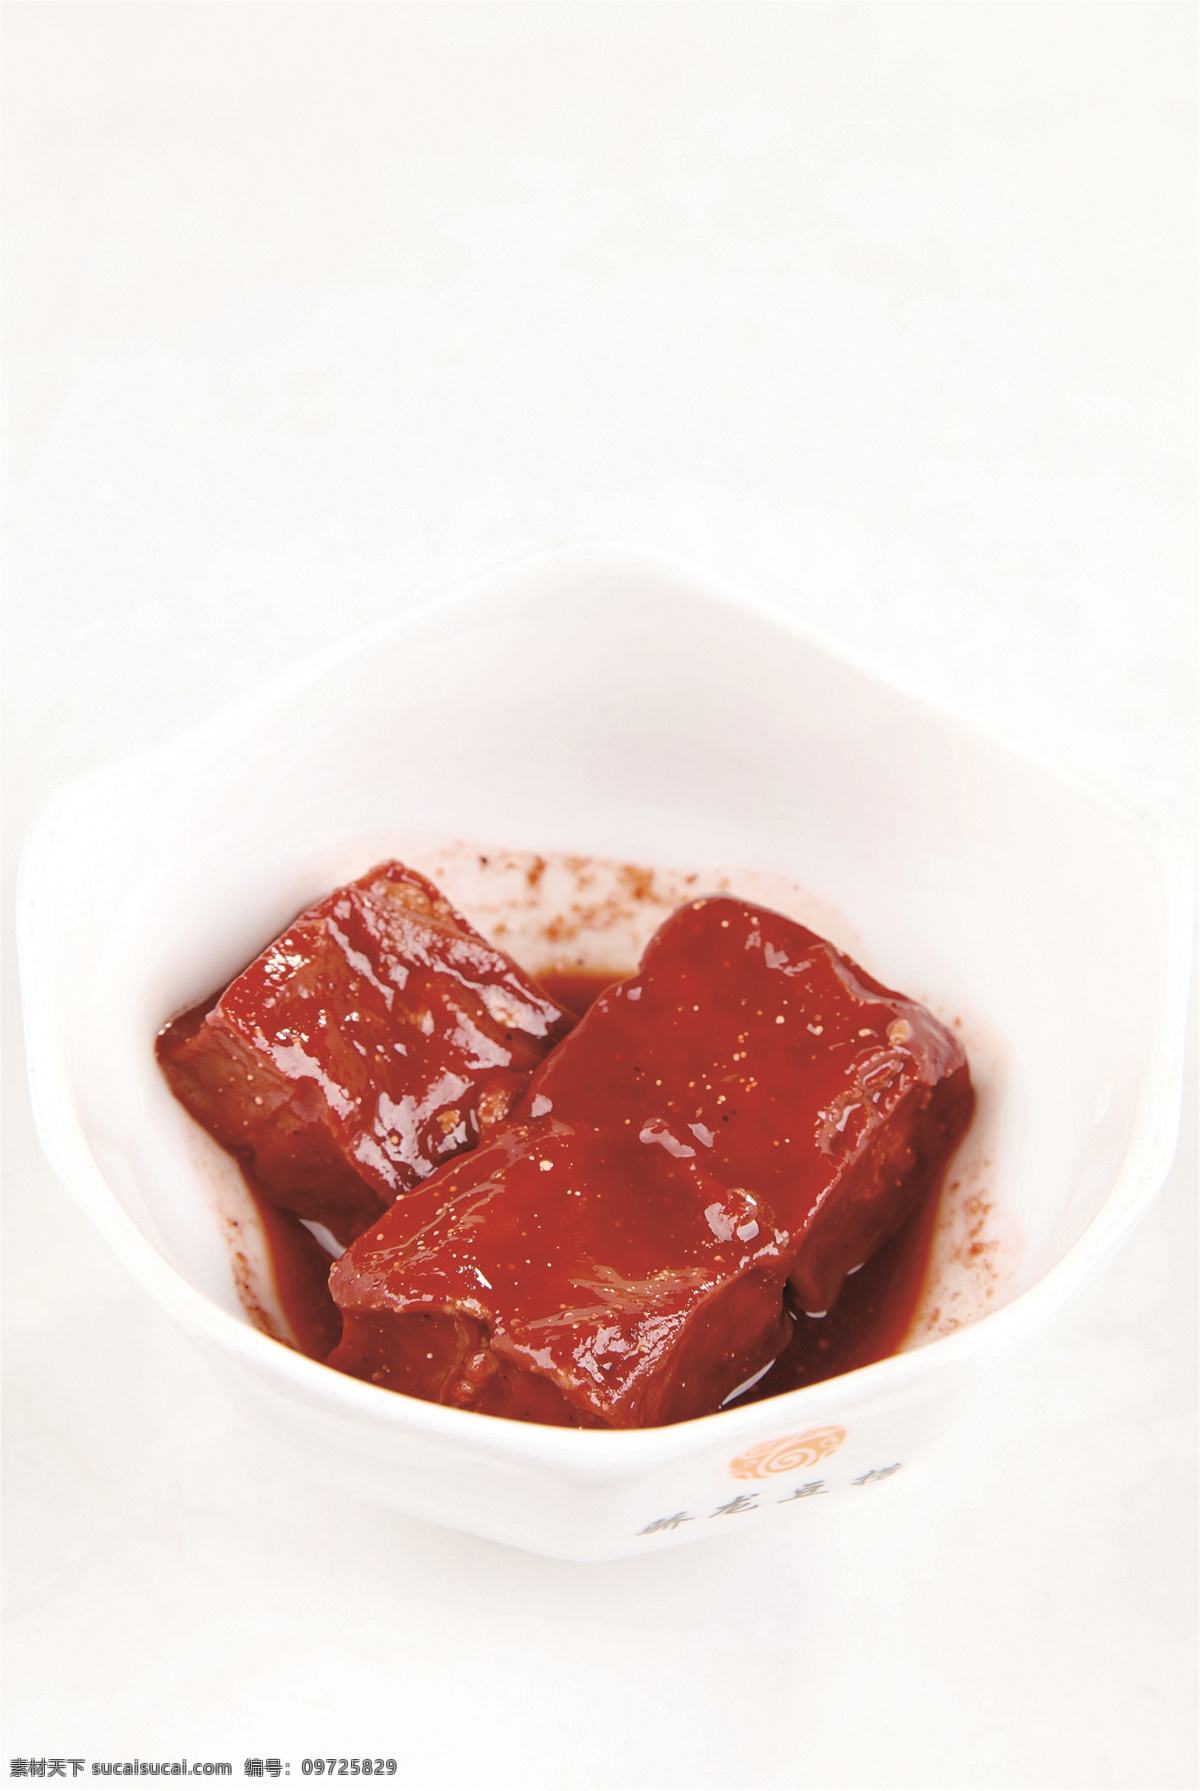 豆腐乳图片 豆腐乳 美食 传统美食 餐饮美食 高清菜谱用图